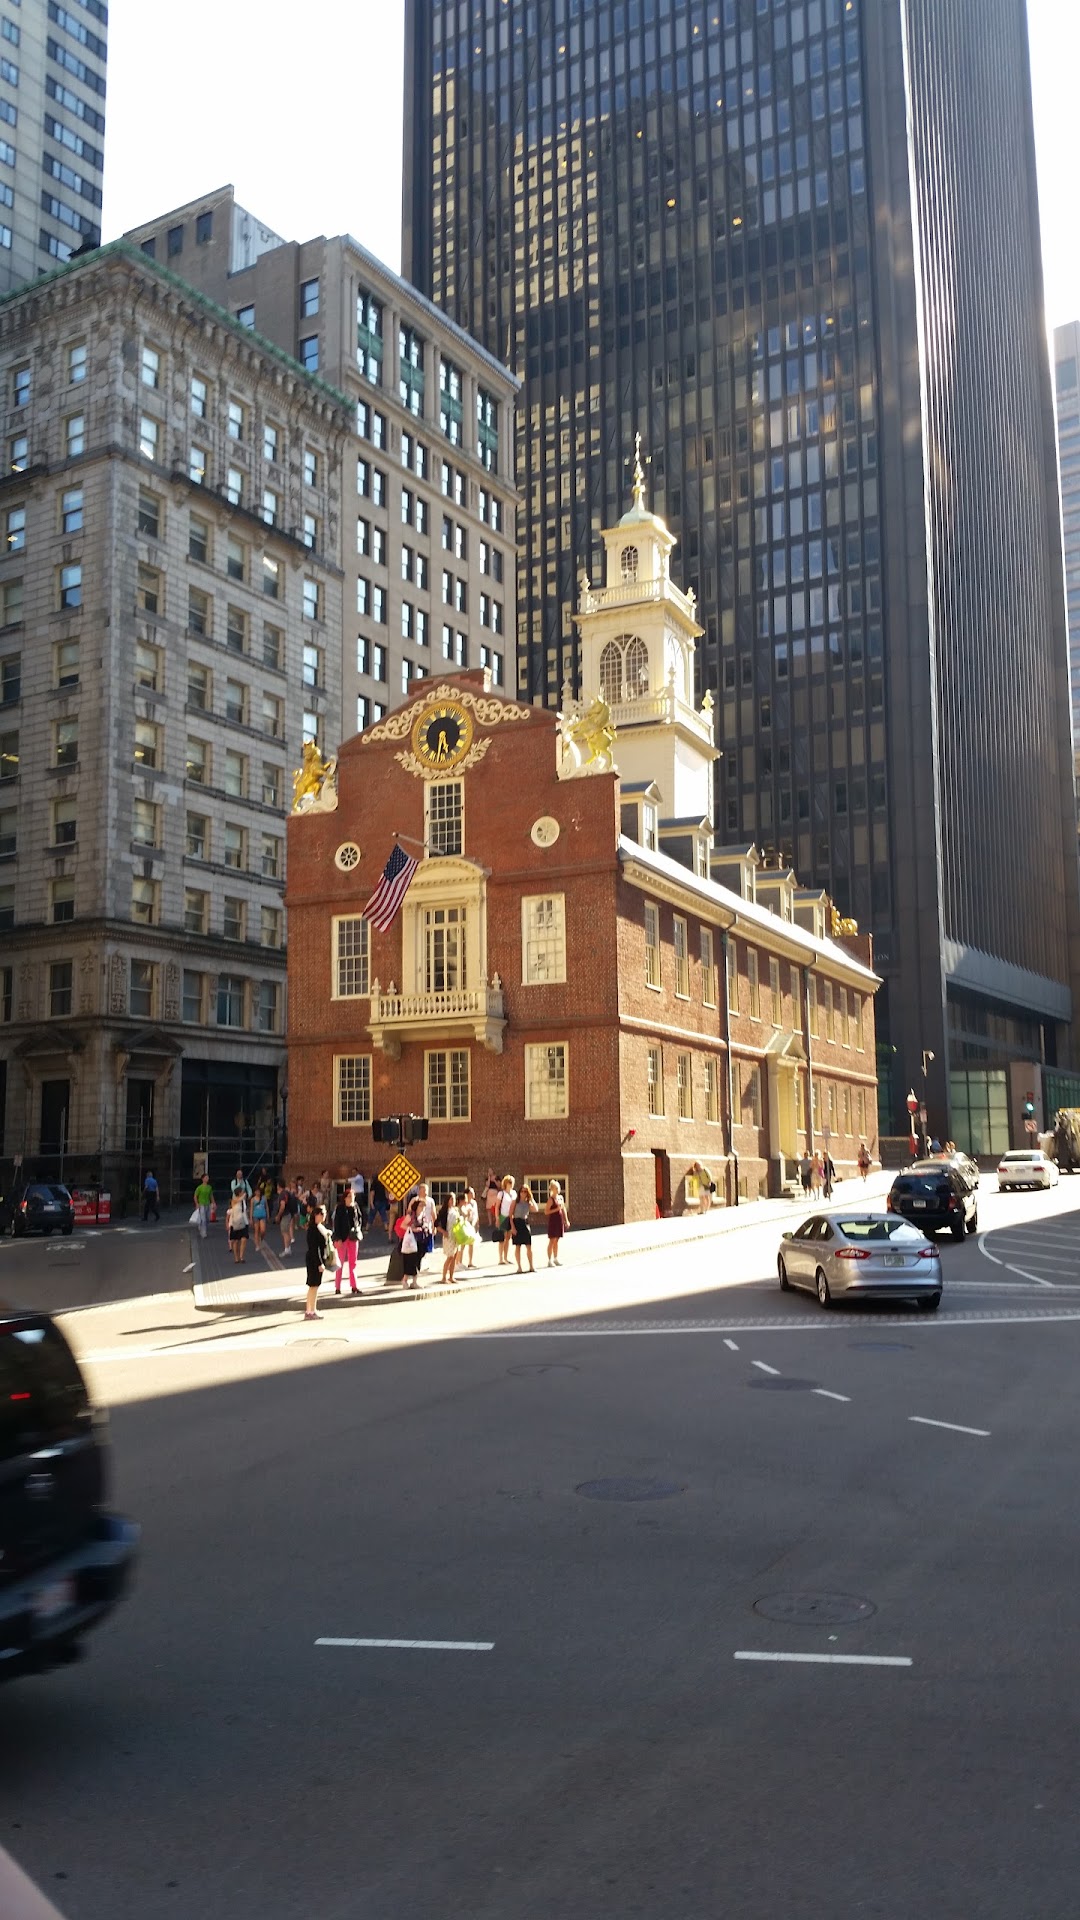 The Bostonian Society